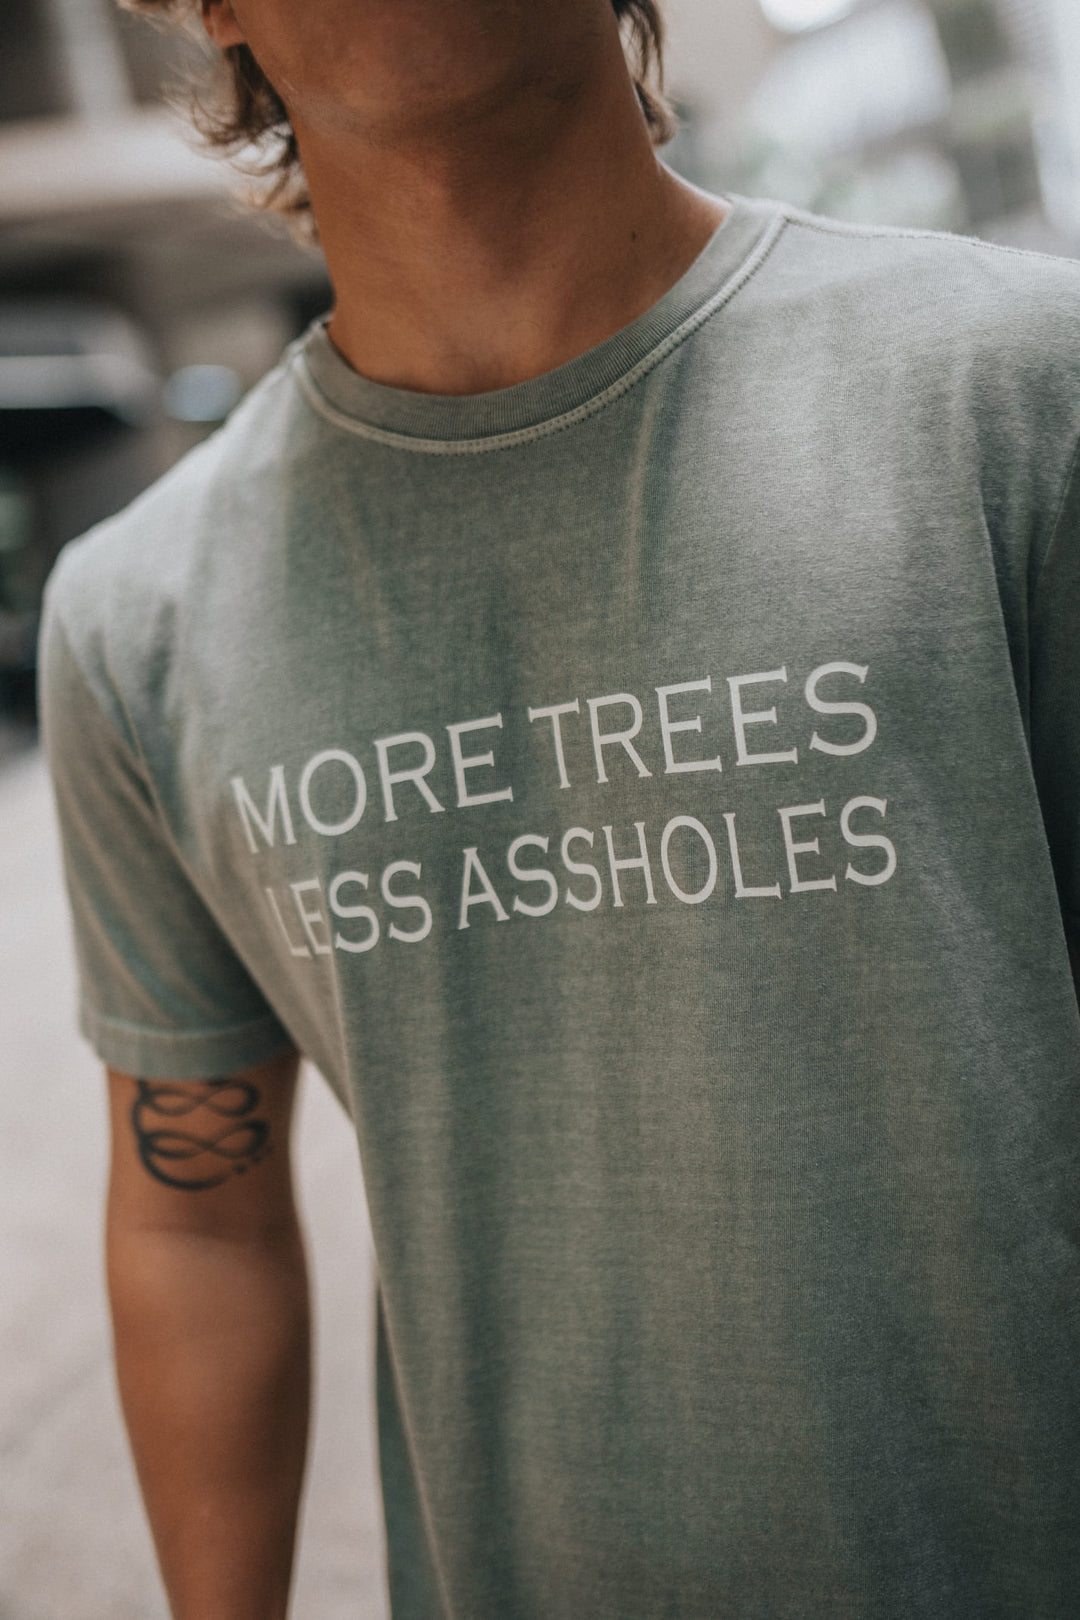 Camiseta "More Trees" Premium Please